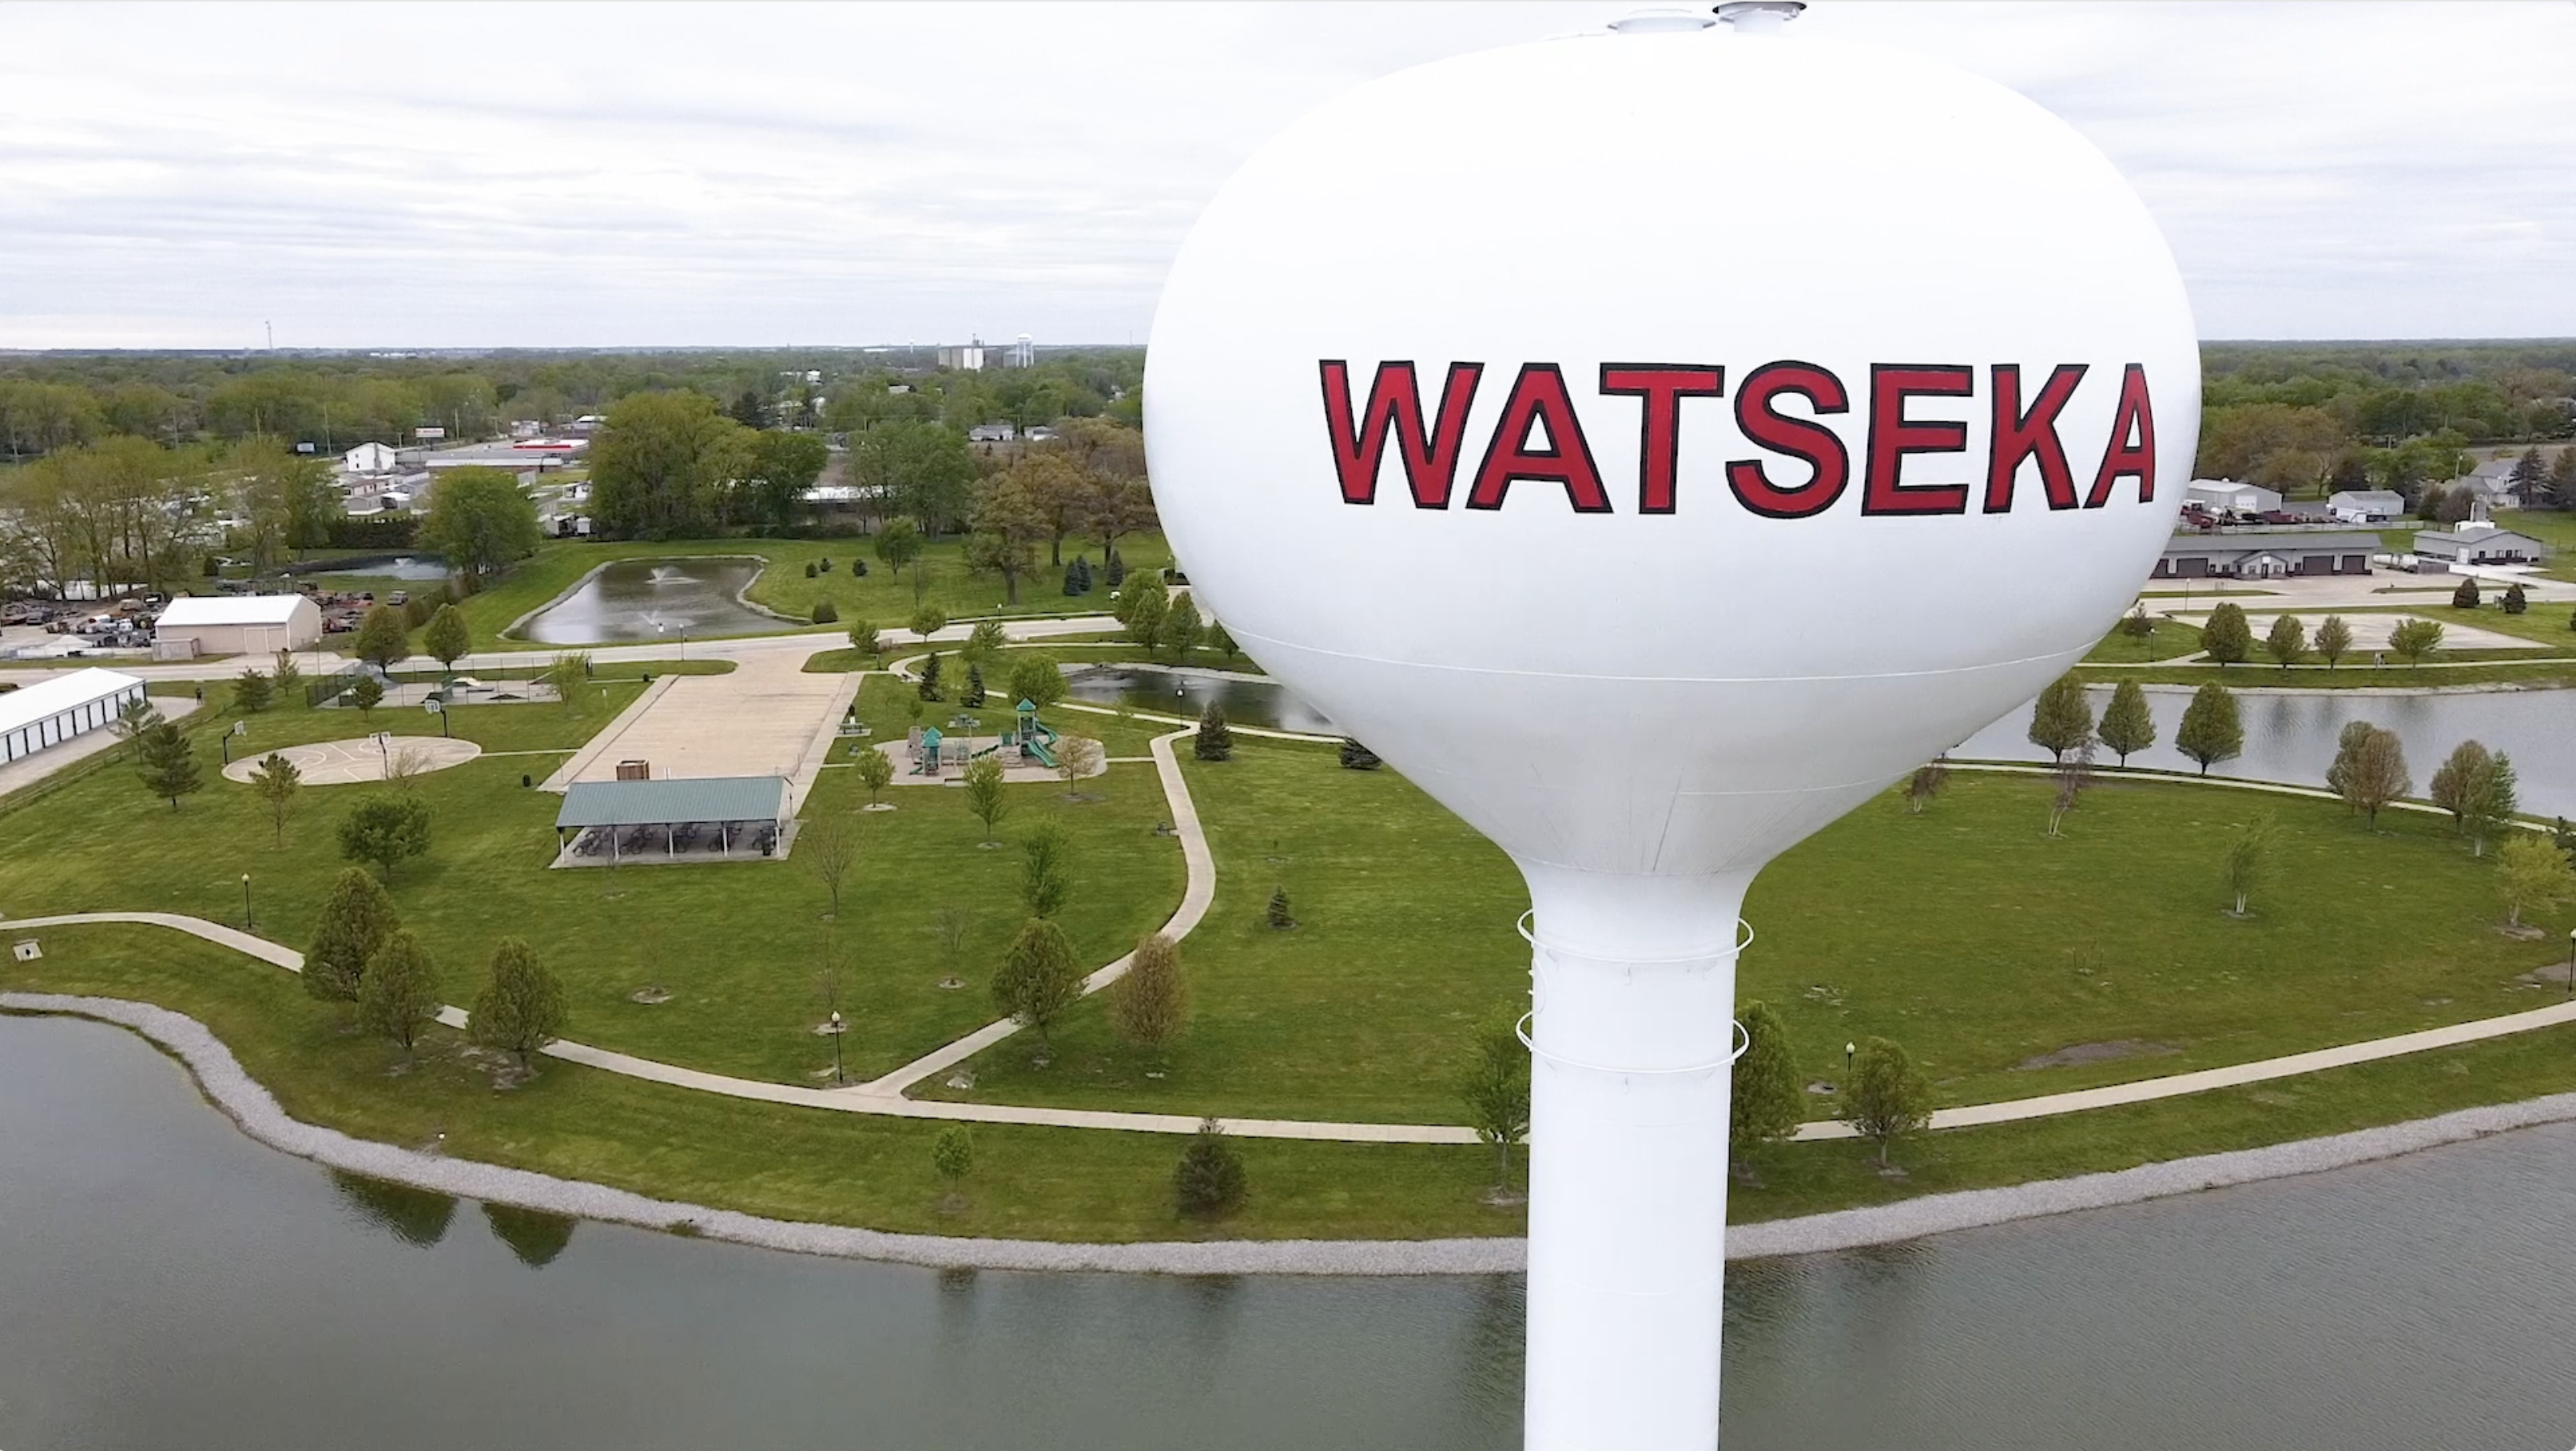 City of Watseka, Illinois